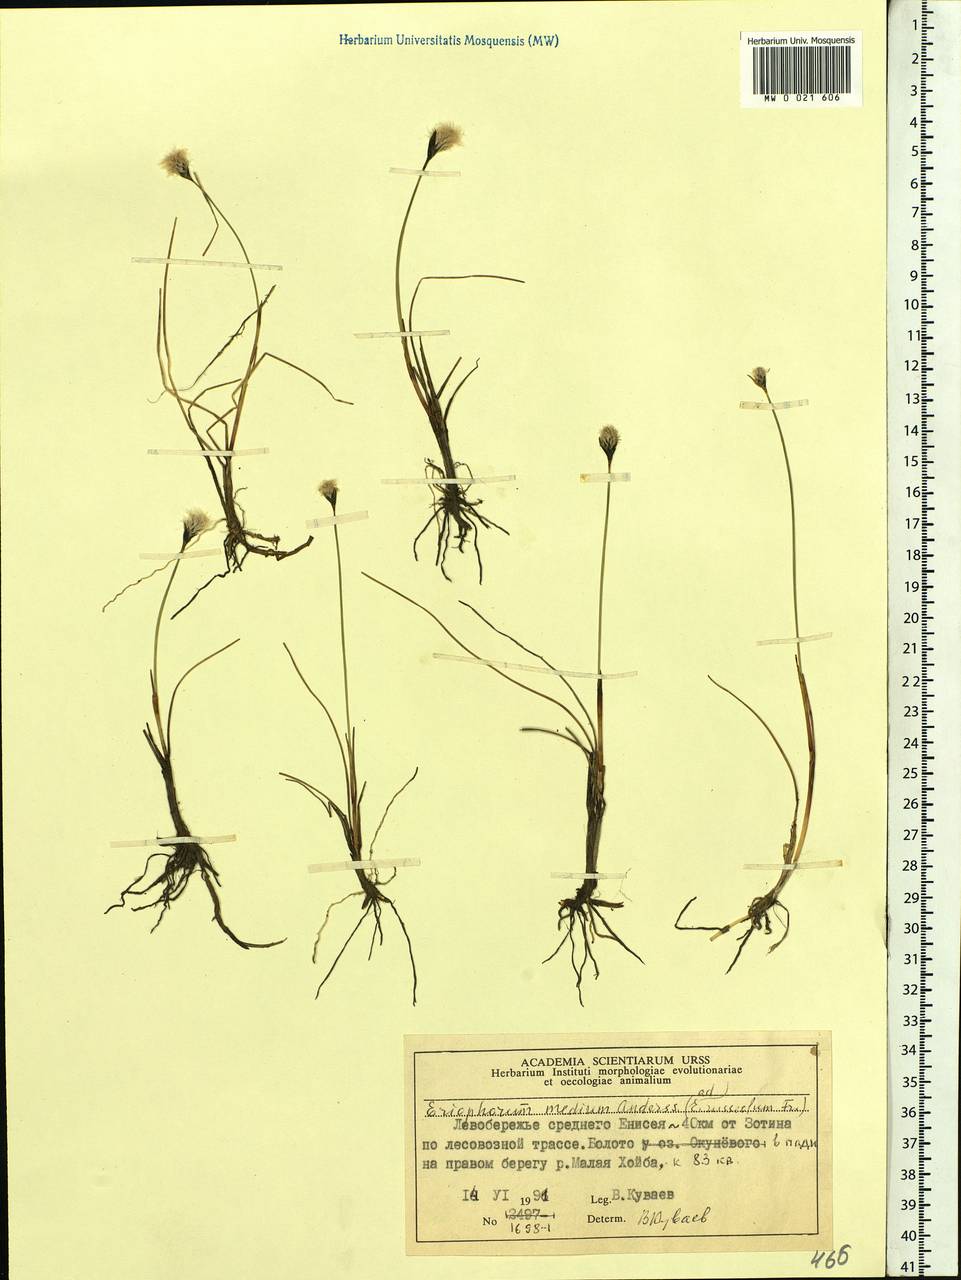 Eriophorum medium Andersson, Siberia, Central Siberia (S3) (Russia)